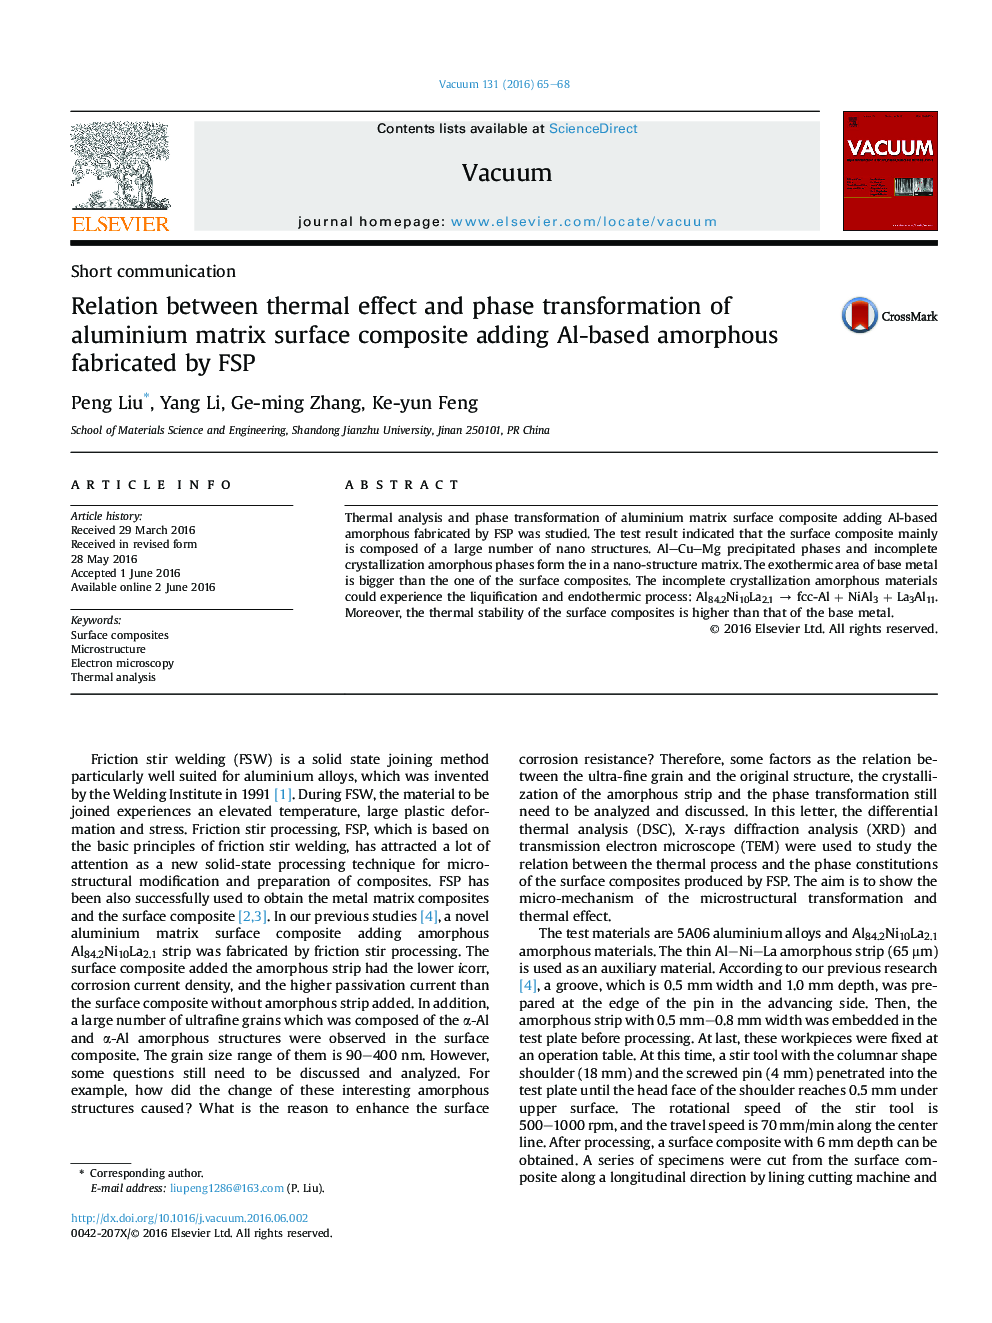 ارتباط بین اثر حرارتی و انتقال فاز کامپوزیت سطح ماتریس آلومینیوم با افزودن آمورف مبتنی بر Al ساخته شده توسط FSP